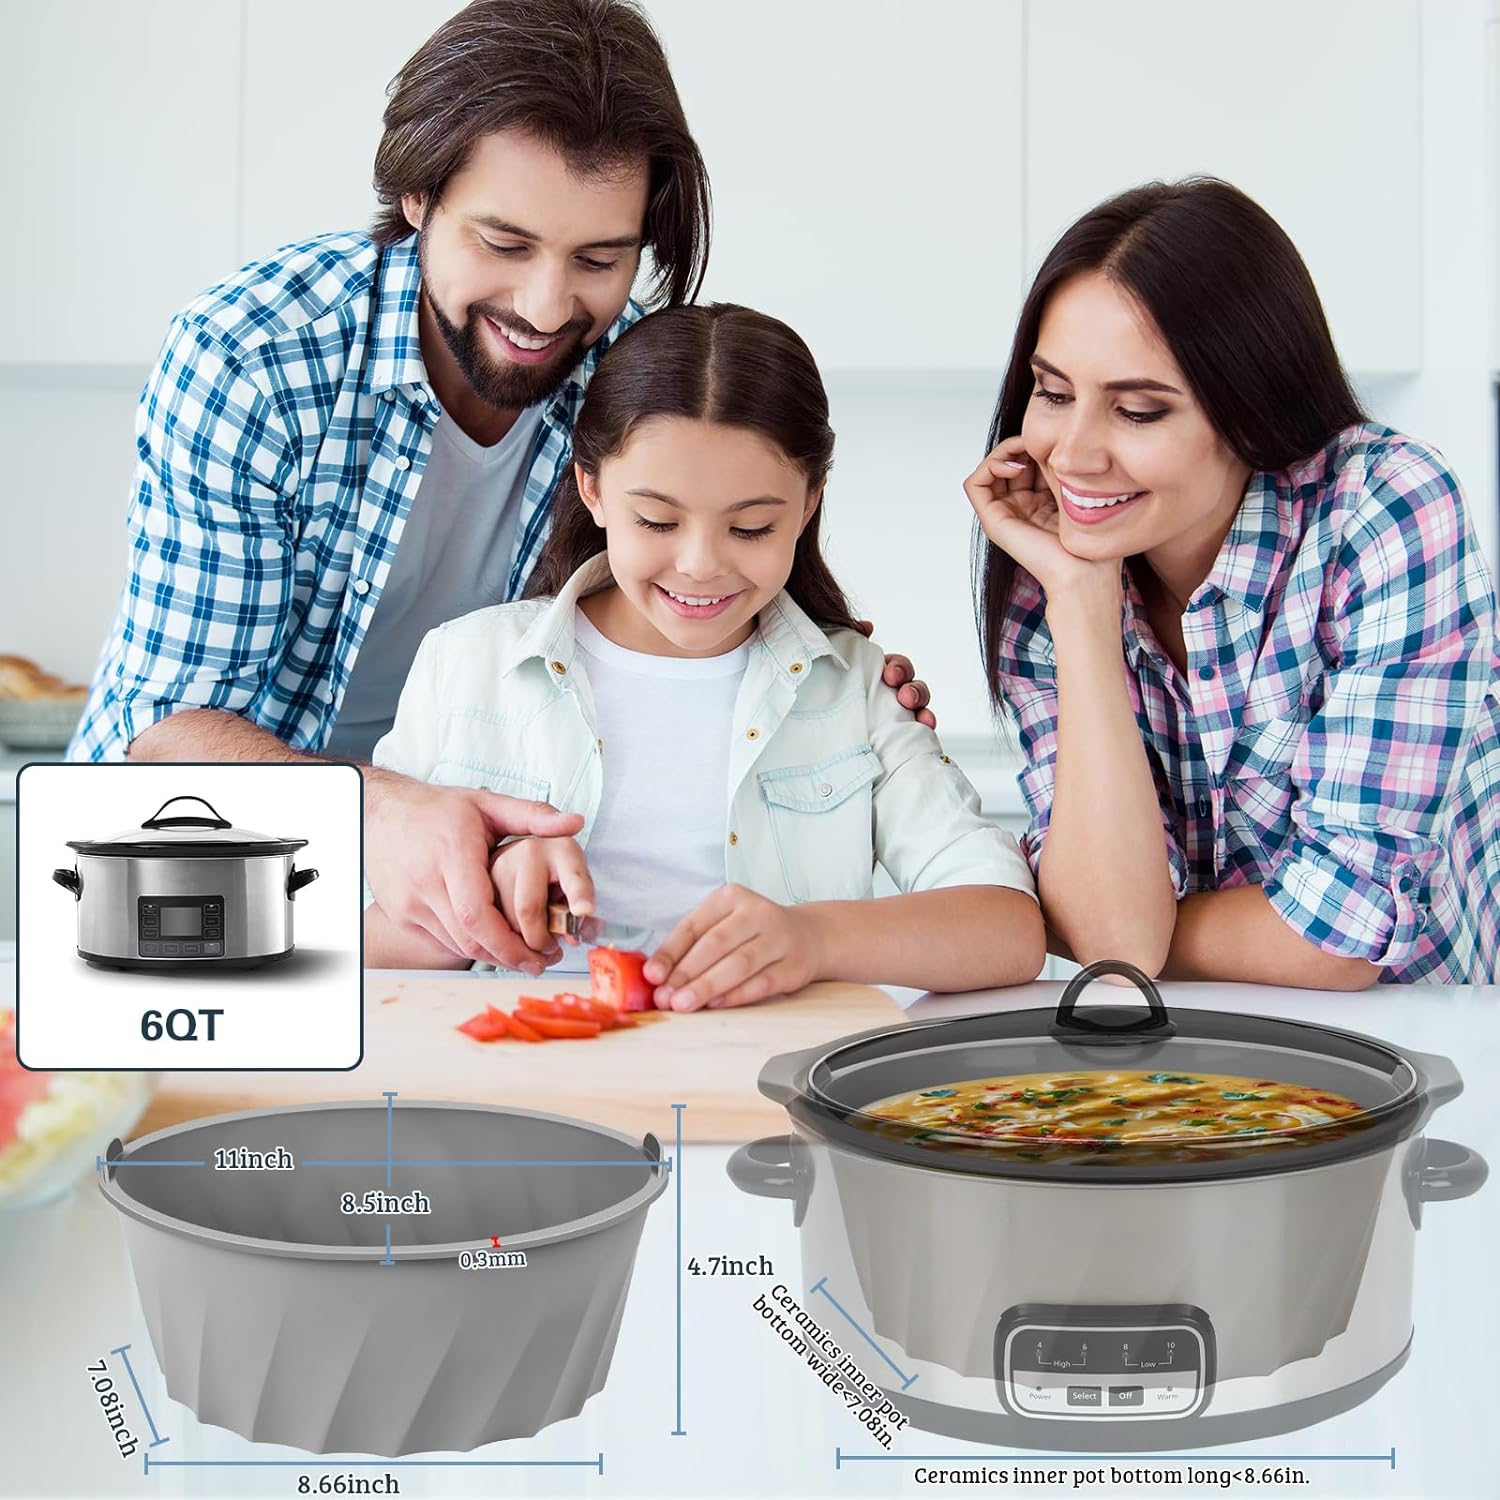 Crock-pot SCCPVP600-S Smart-Pot 6-Quart Slow Cooker - Brushed Stainless Steel